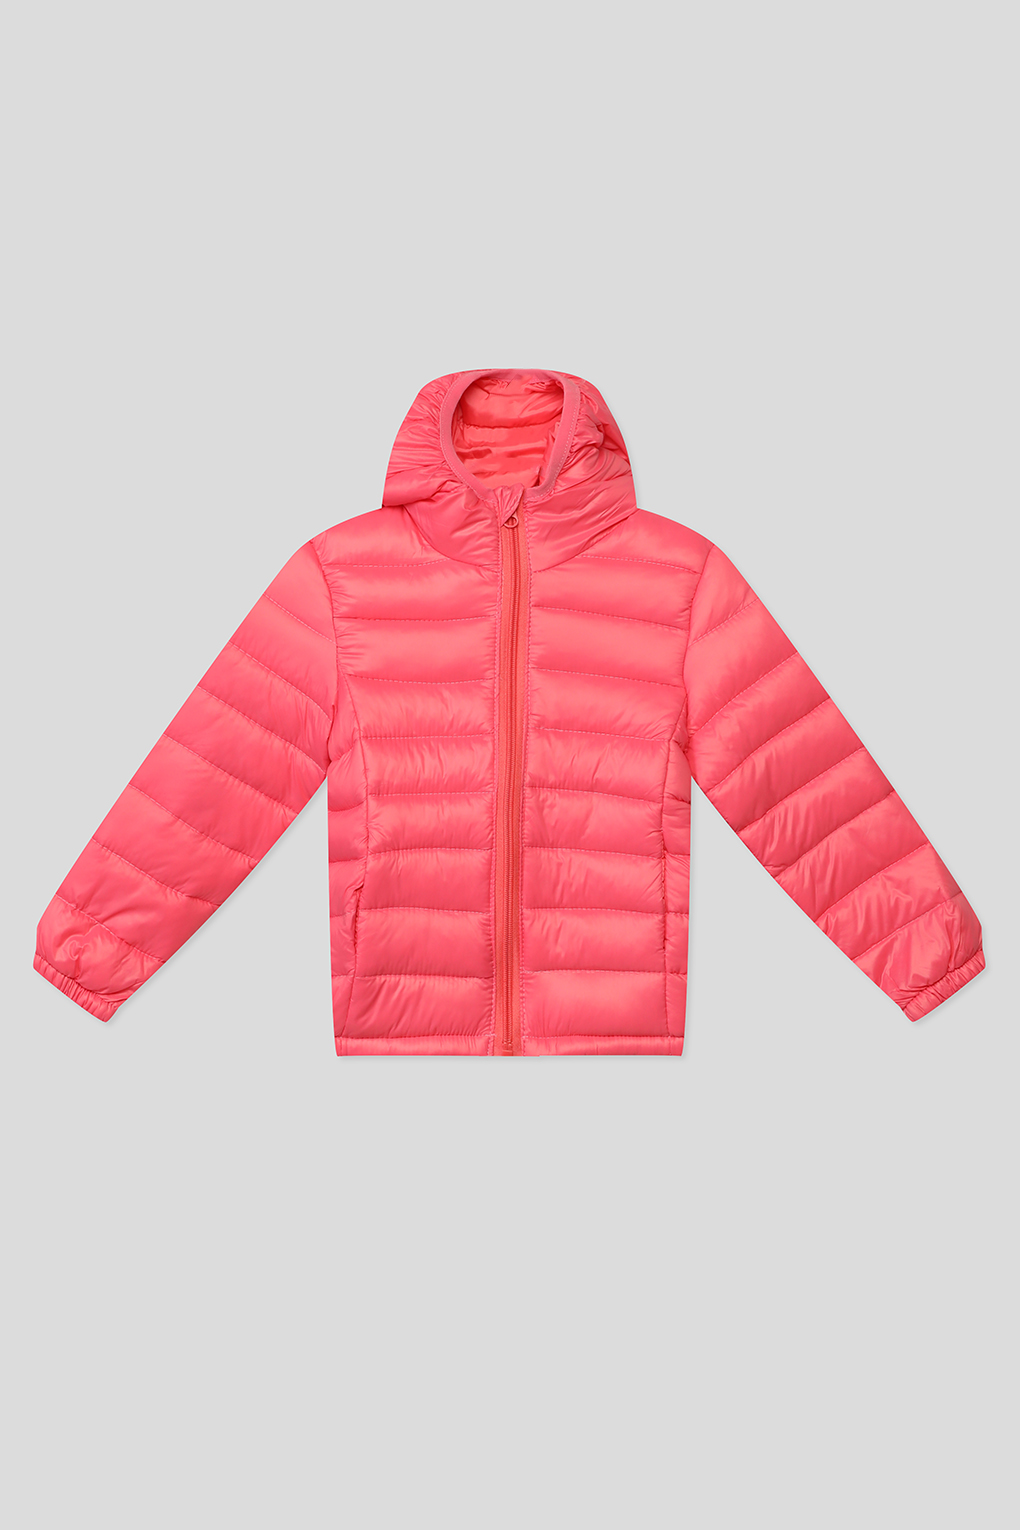 Куртка детская GIOCO G23049253-007 розовый, 110